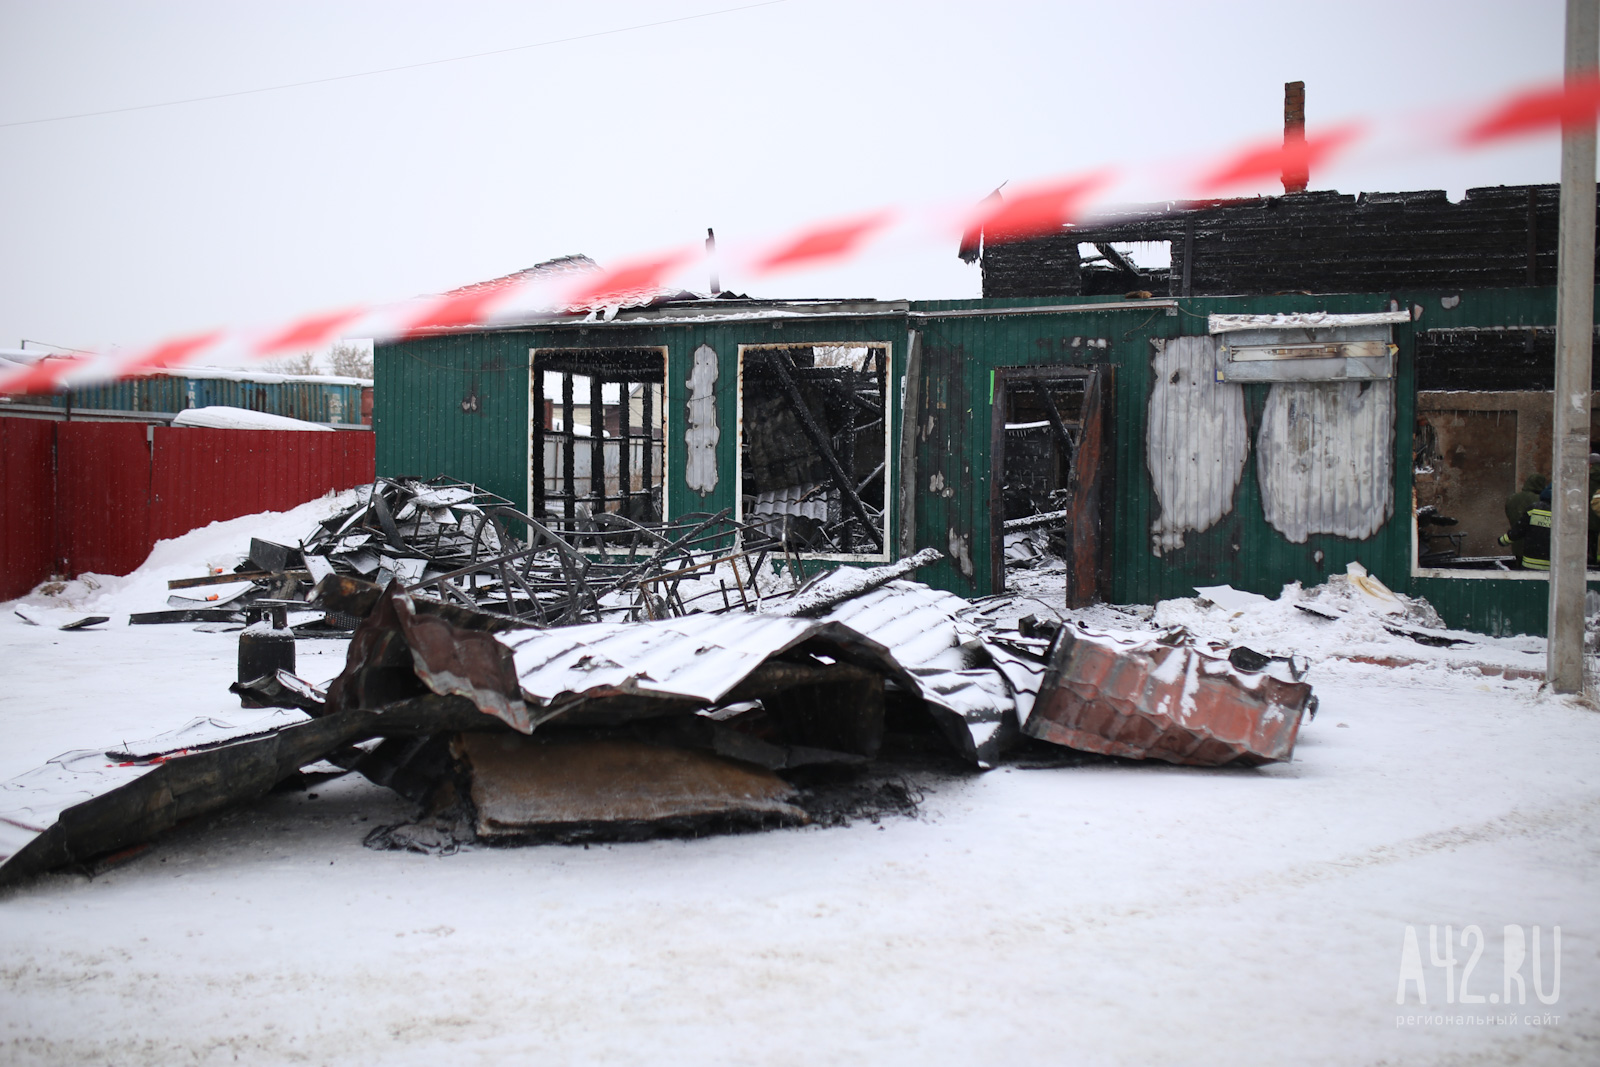 Сторона обвинения: на пожаре в кемеровском приюте на Таврической улице погибли 15 мужчин и 8 женщин